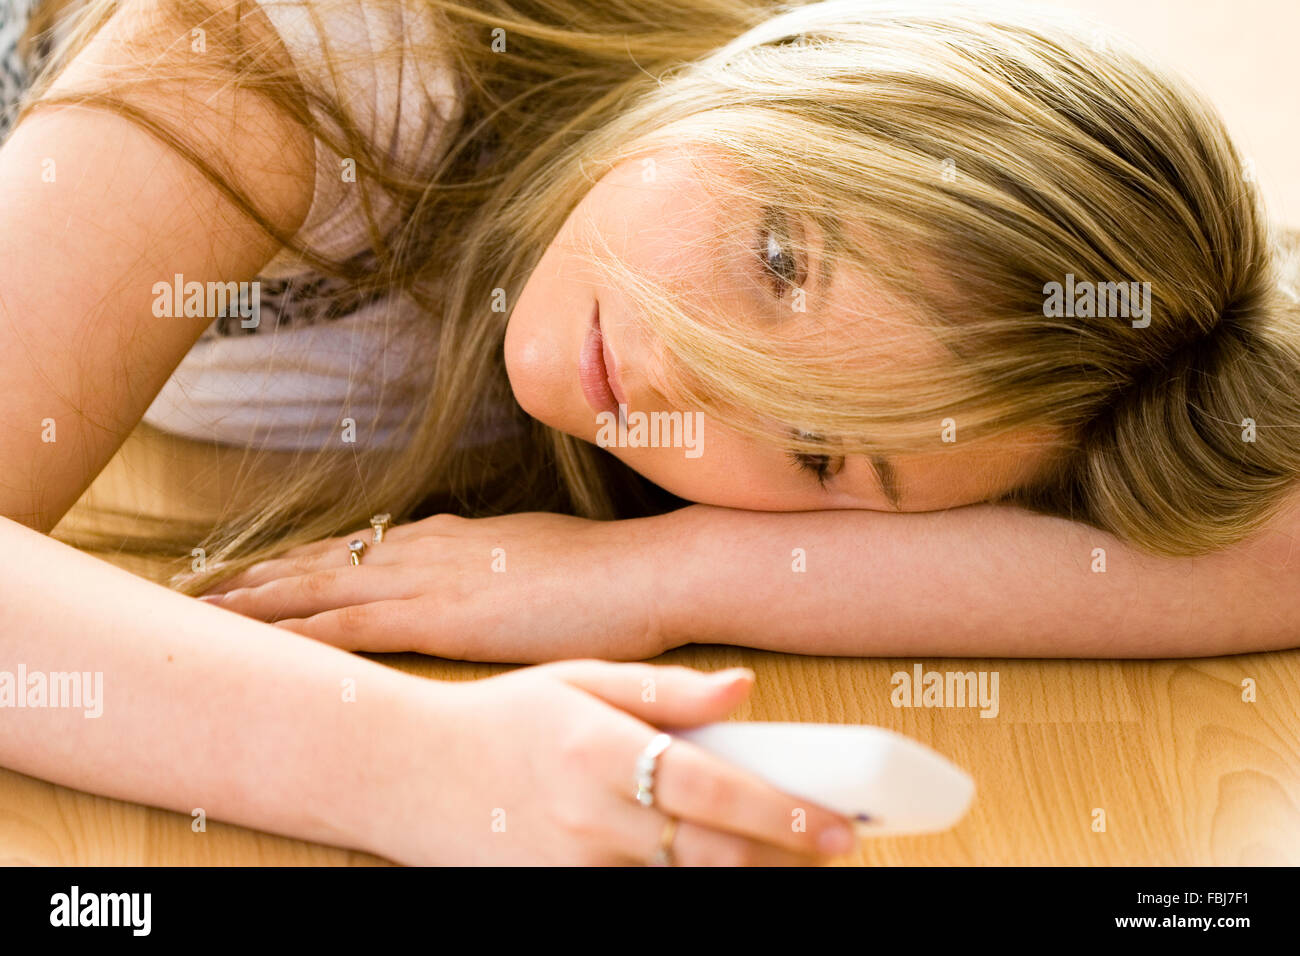 Schöne junge Frau, 16 Jahre alt, Kopf und Schultern, blond, blaue Augen, mit traurigen Ausdruck, Telefon, während am Boden. Soft Focus Stockfoto